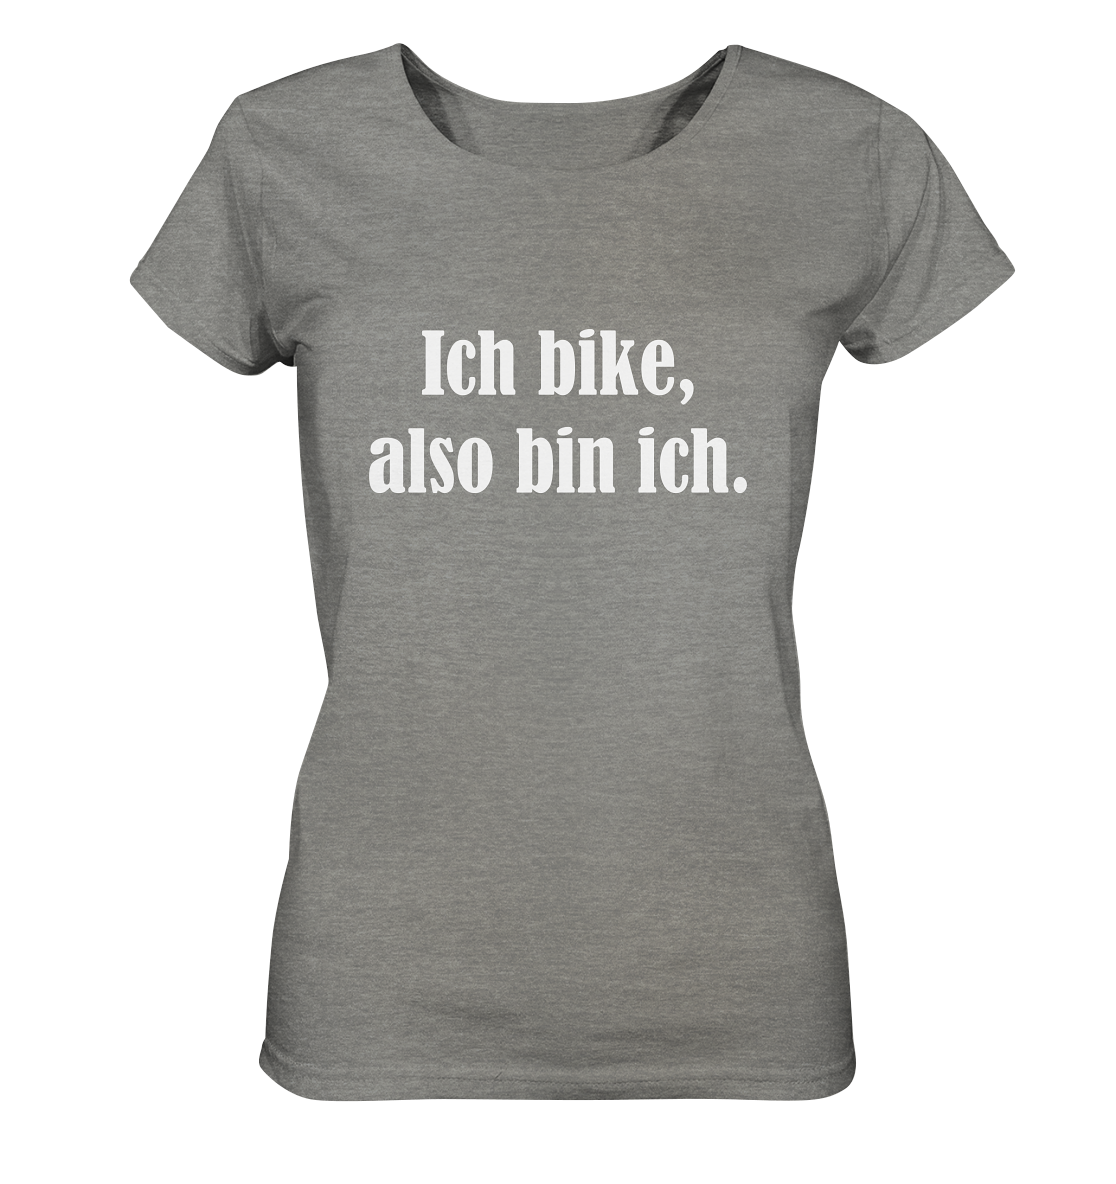 T-Shirt, Damen, Rundhals, mit weißem Aufdruck "Ich bike, also bin ich", grau meliert